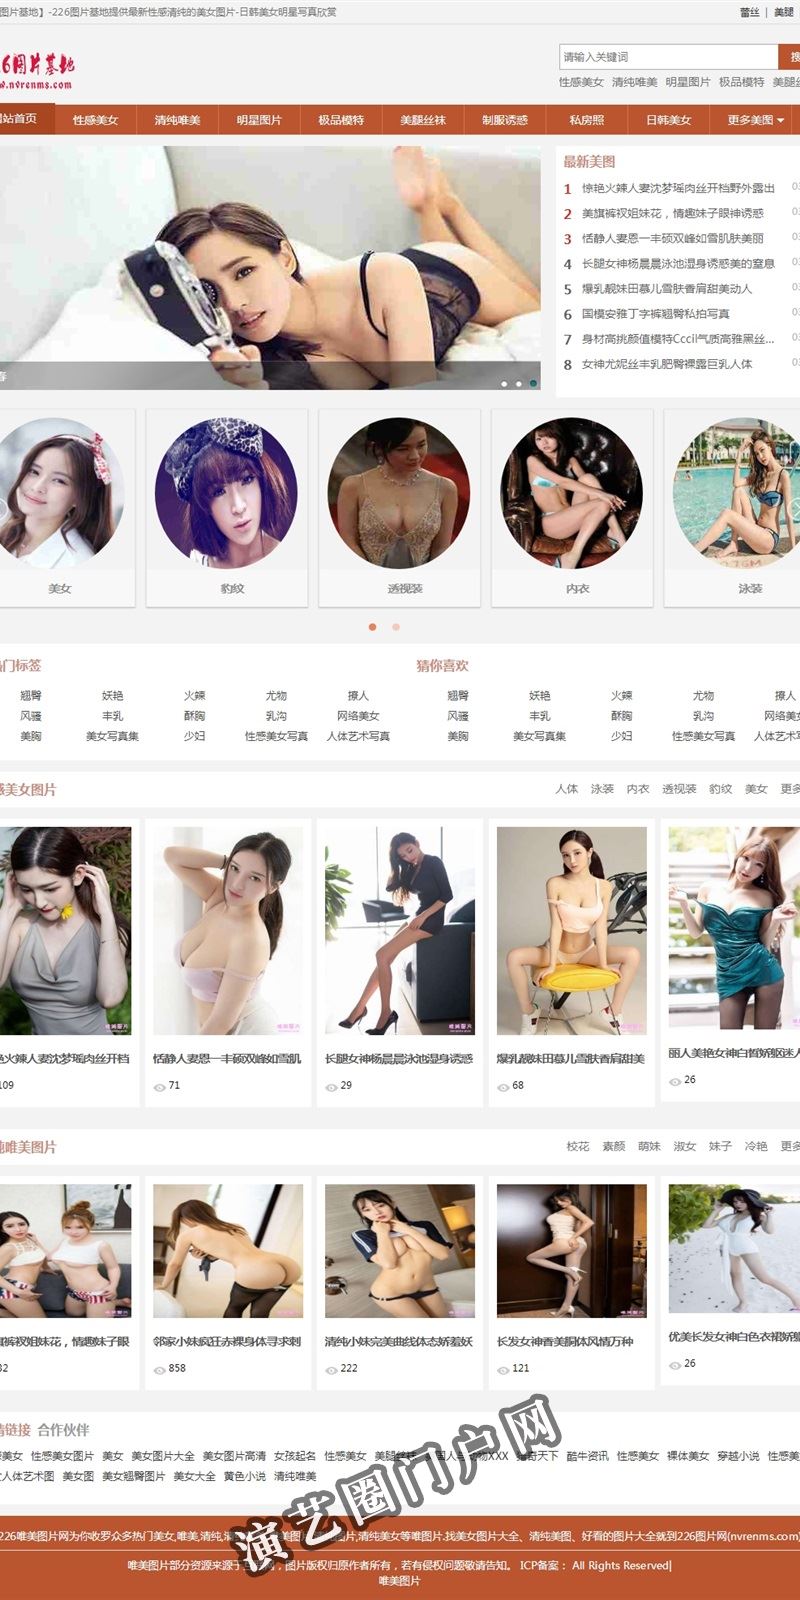 226图片基地提供最新性感清纯的美女图片-日韩美女明星写真欣赏截图